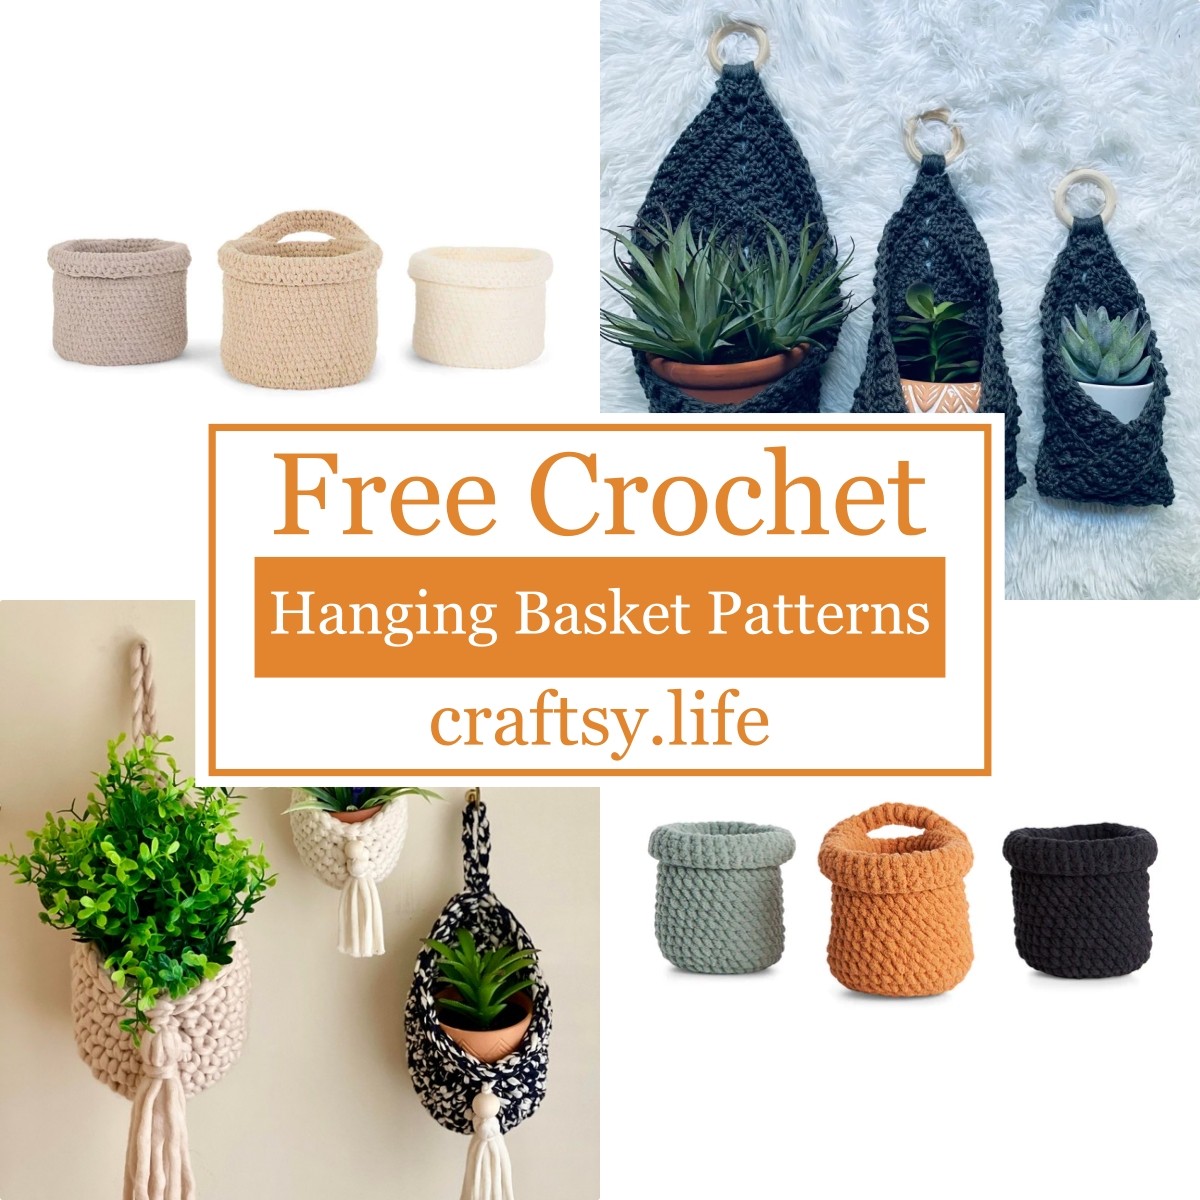 5 Free Crochet Hanging Basket Patterns